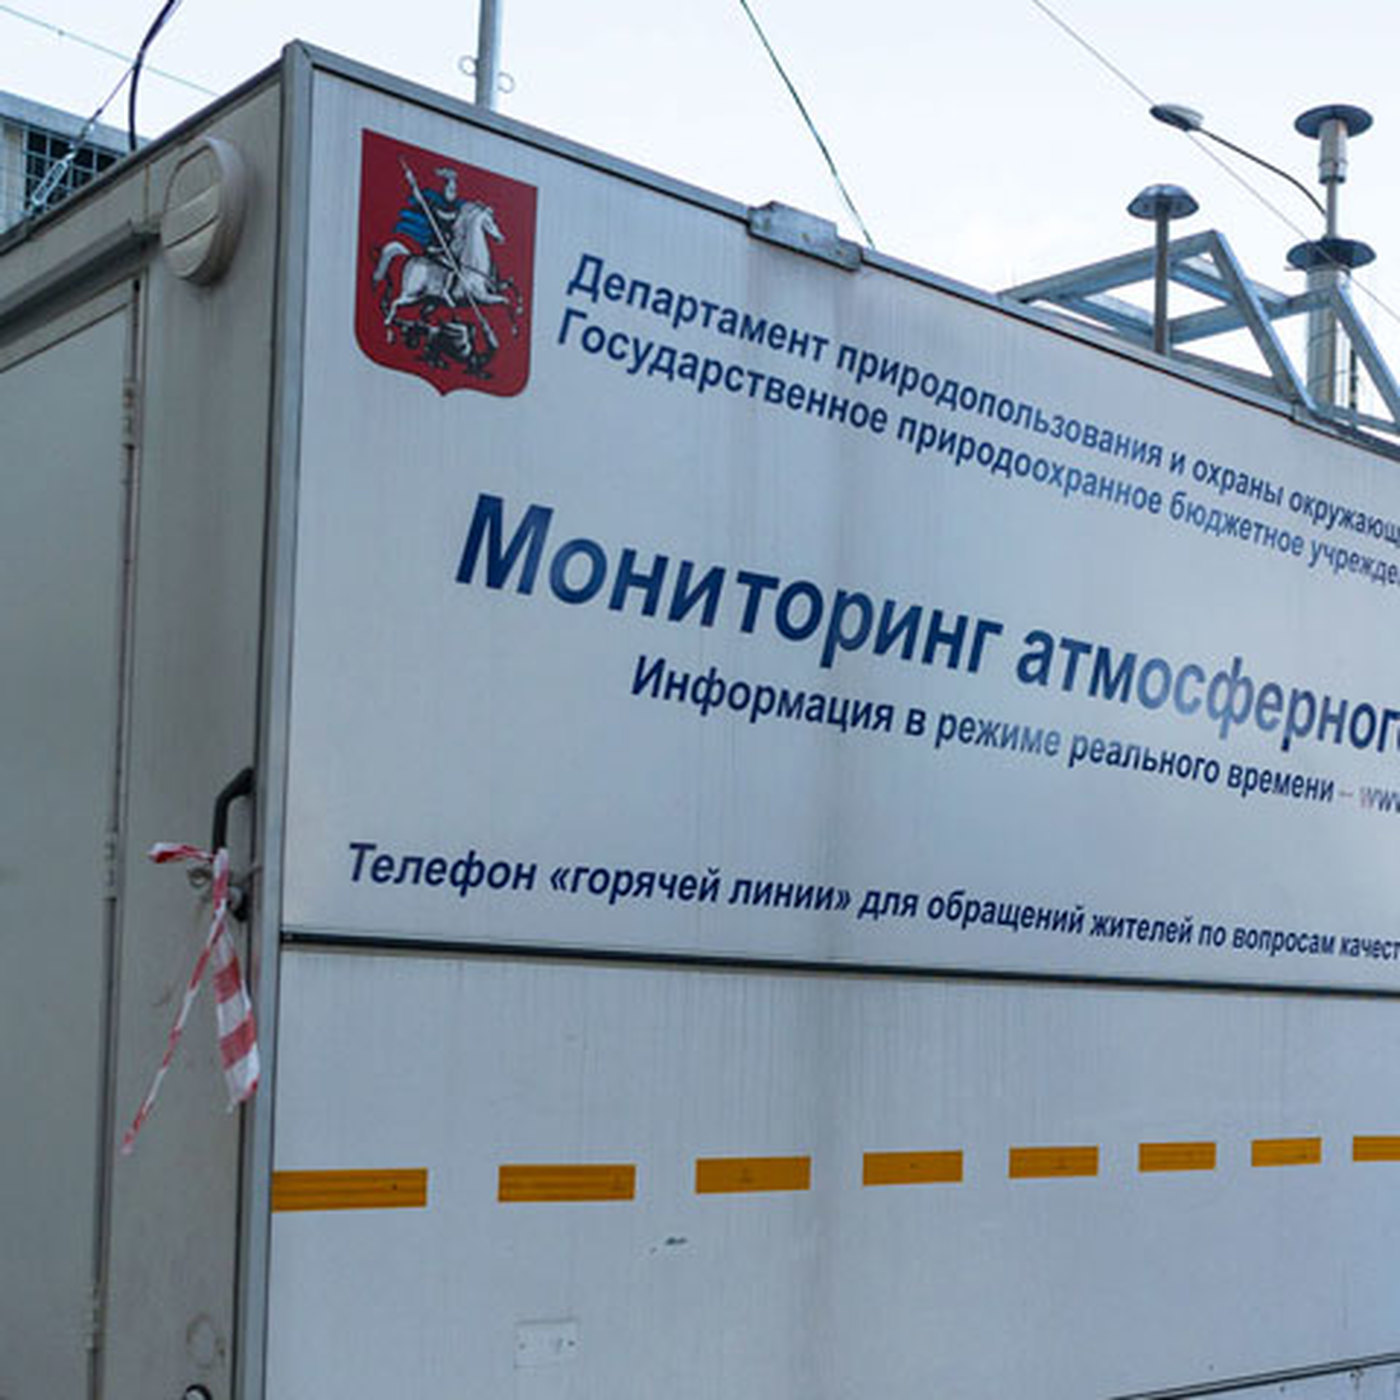 В Москве установили инновационную станцию контроля загрязнения воздуха - фото 1